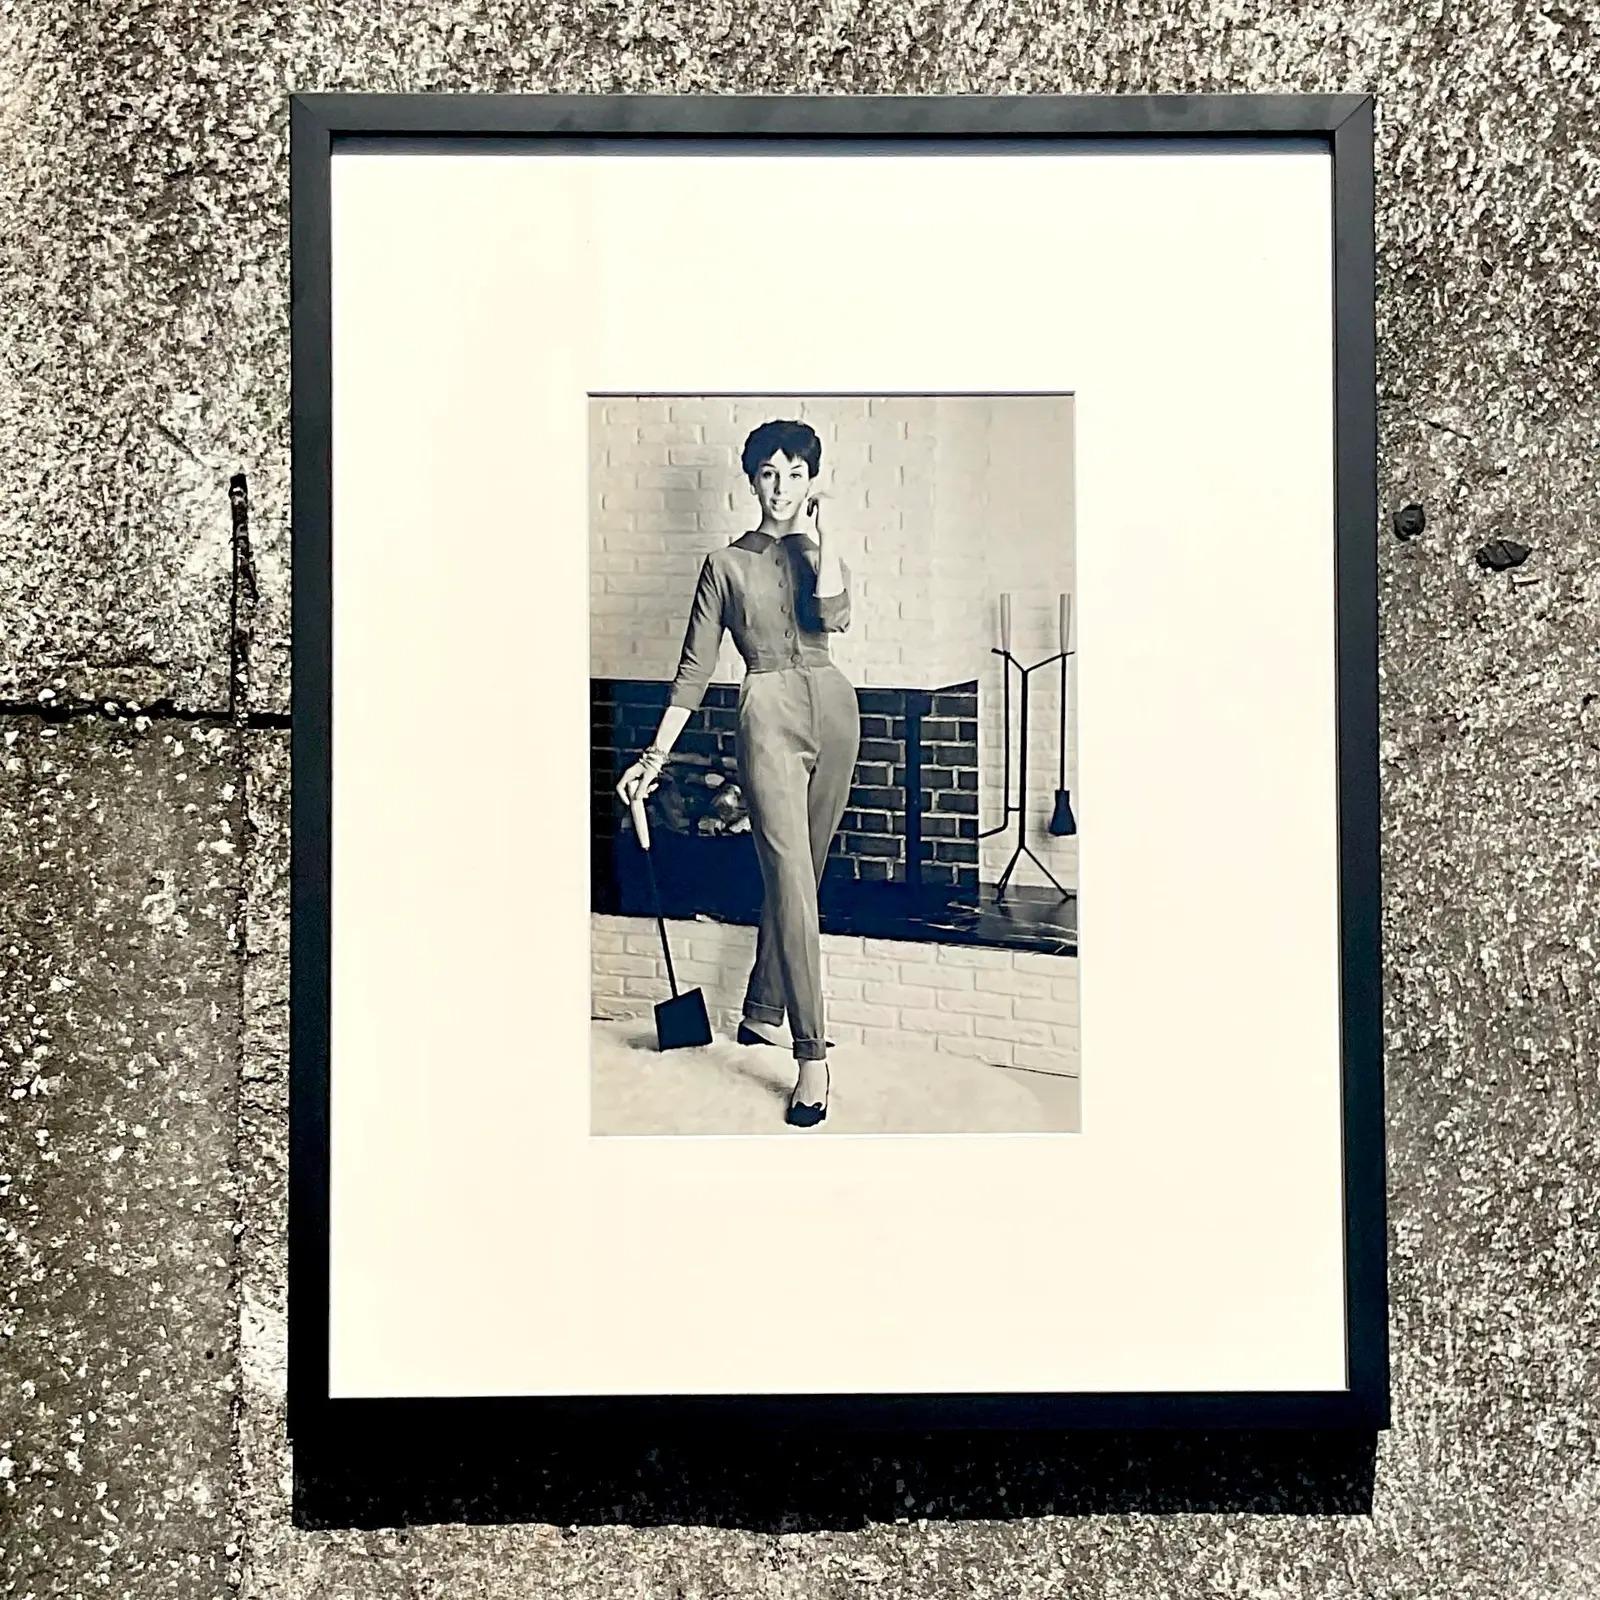 Une fantastique photo vintage encadrée en noir et blanc. Une photo de mode chic des années 70 d'une jeune fille avec son balai de cheminée. Rien n'est plus tendance qu'un bon balai de cheminée. Nouvellement encadrée dans un cadre noir chic et